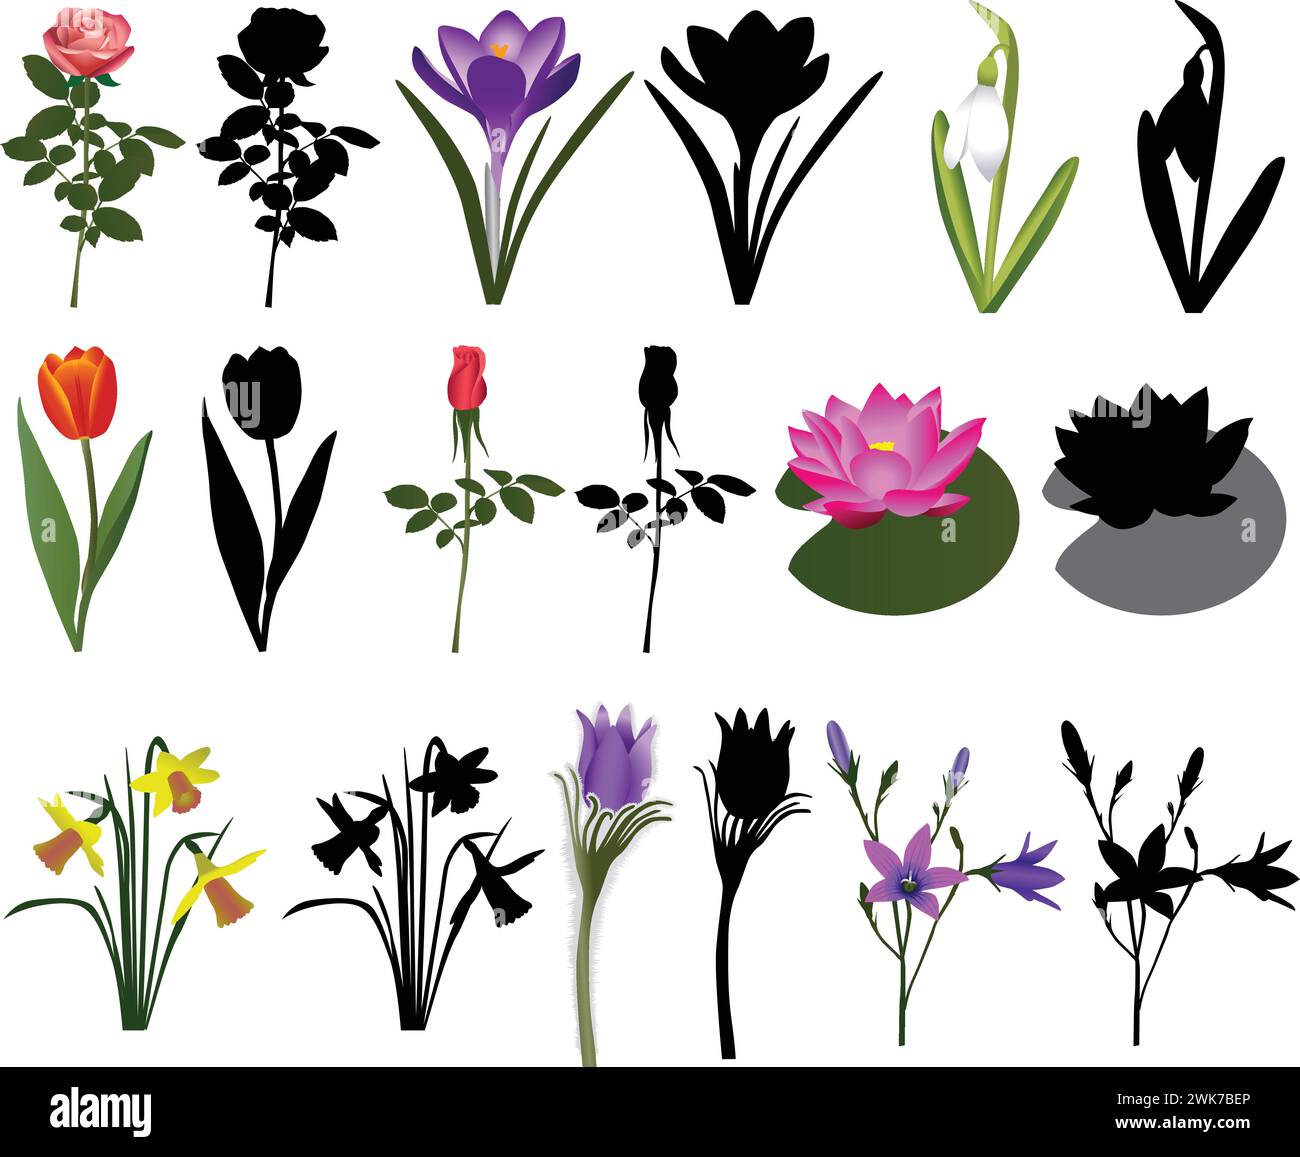 Sammlung verschiedener Blumenarten: Rose, Tulpe, Seerose, Krokus, Narzissen, bellflower, Schneeglöckchen, Pasqueflower. Farbvektor und Silhouette Stock Vektor